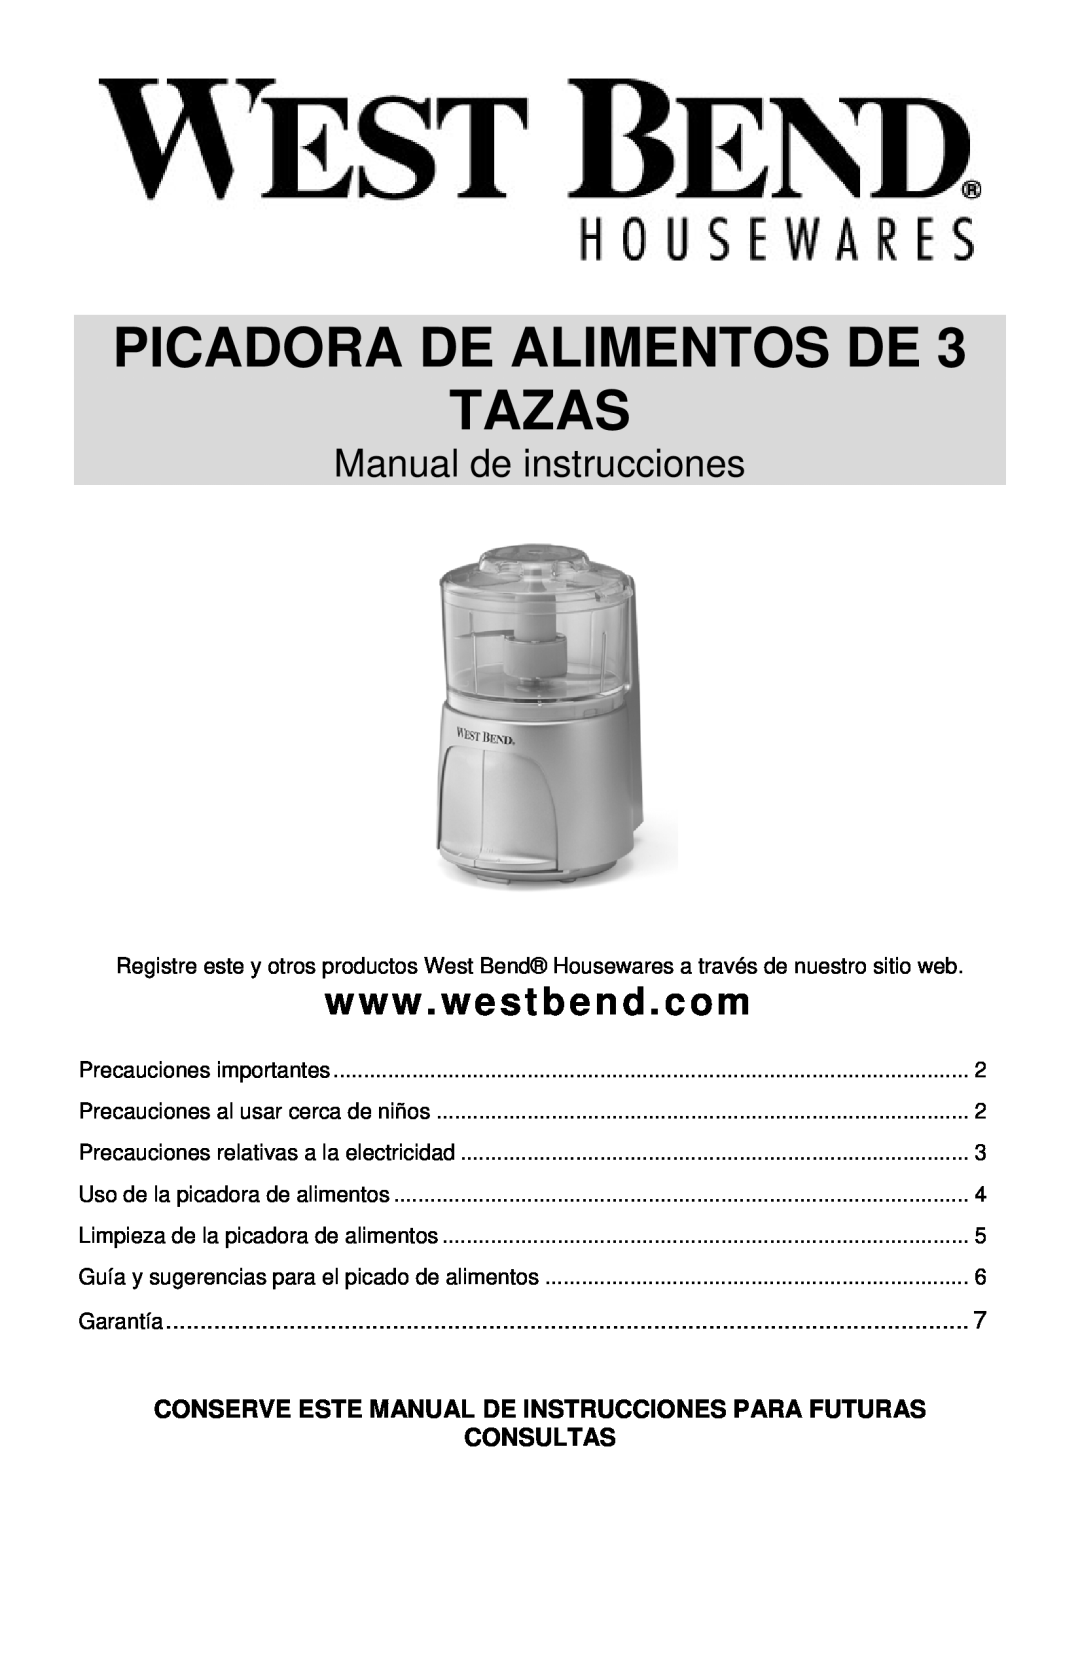 West Bend L5685 instruction manual Picadora De Alimentos De Tazas, Manual de instrucciones, Consultas 